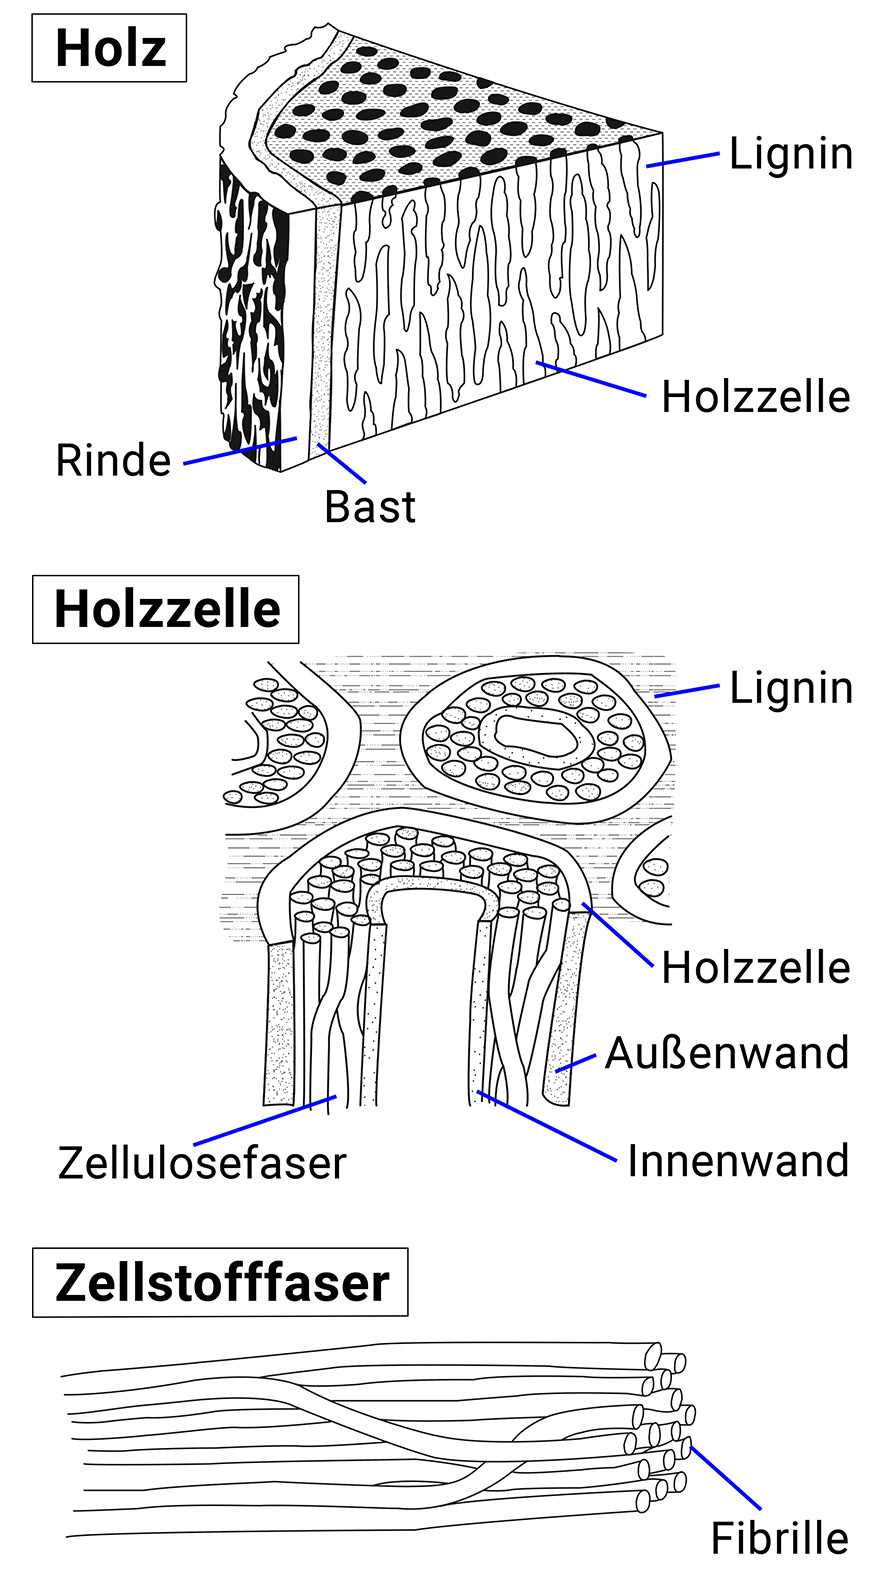 Das Bild zeigt drei Zoomeinstellungen. Auf der obersten Ebene das Holz mit Rinde, Bast, Lignin und Holzzelle. Der Zoom auf die Holzzelle zeigt zudem die Zellulosefasern. Im der dritten Zoomeinstellung wird die Zellulosefaser mit ihren Fibrillen dargestellt.